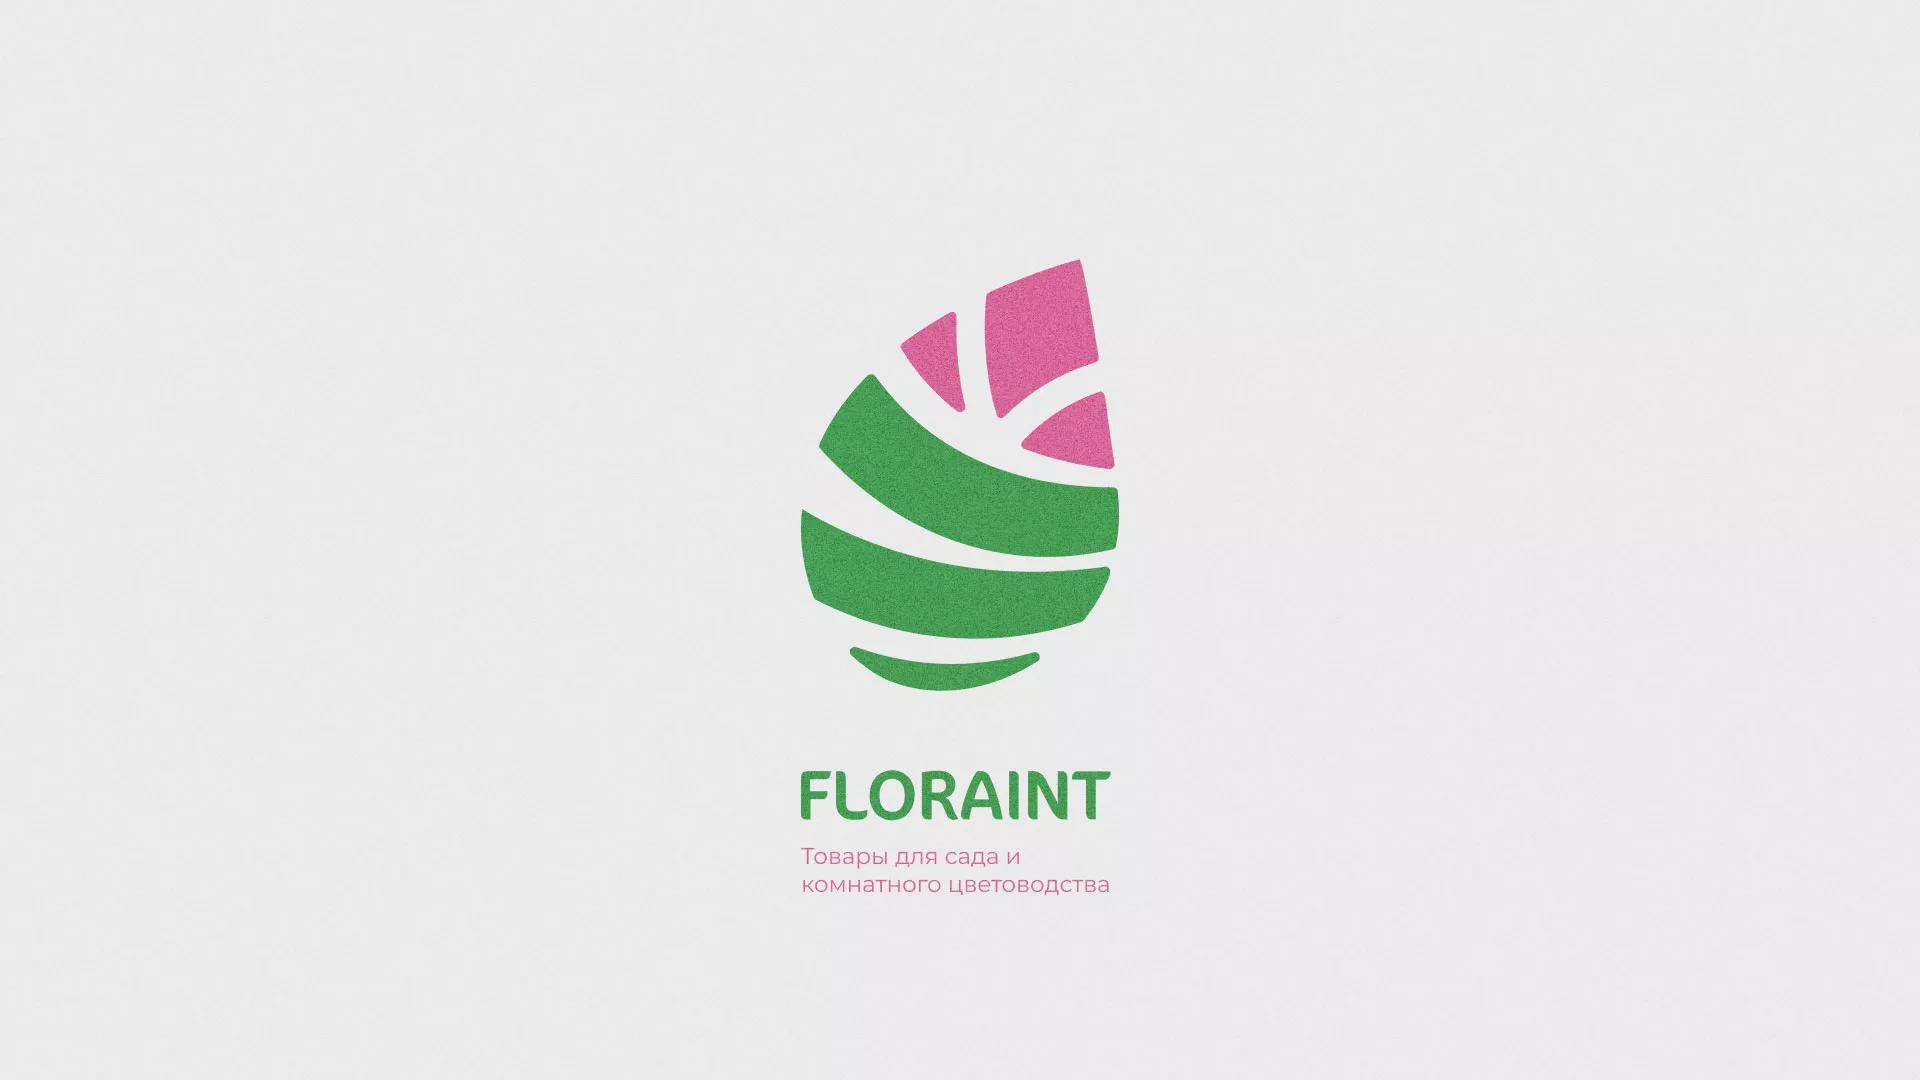 Разработка оформления профиля Instagram для магазина «Floraint» в Каменке